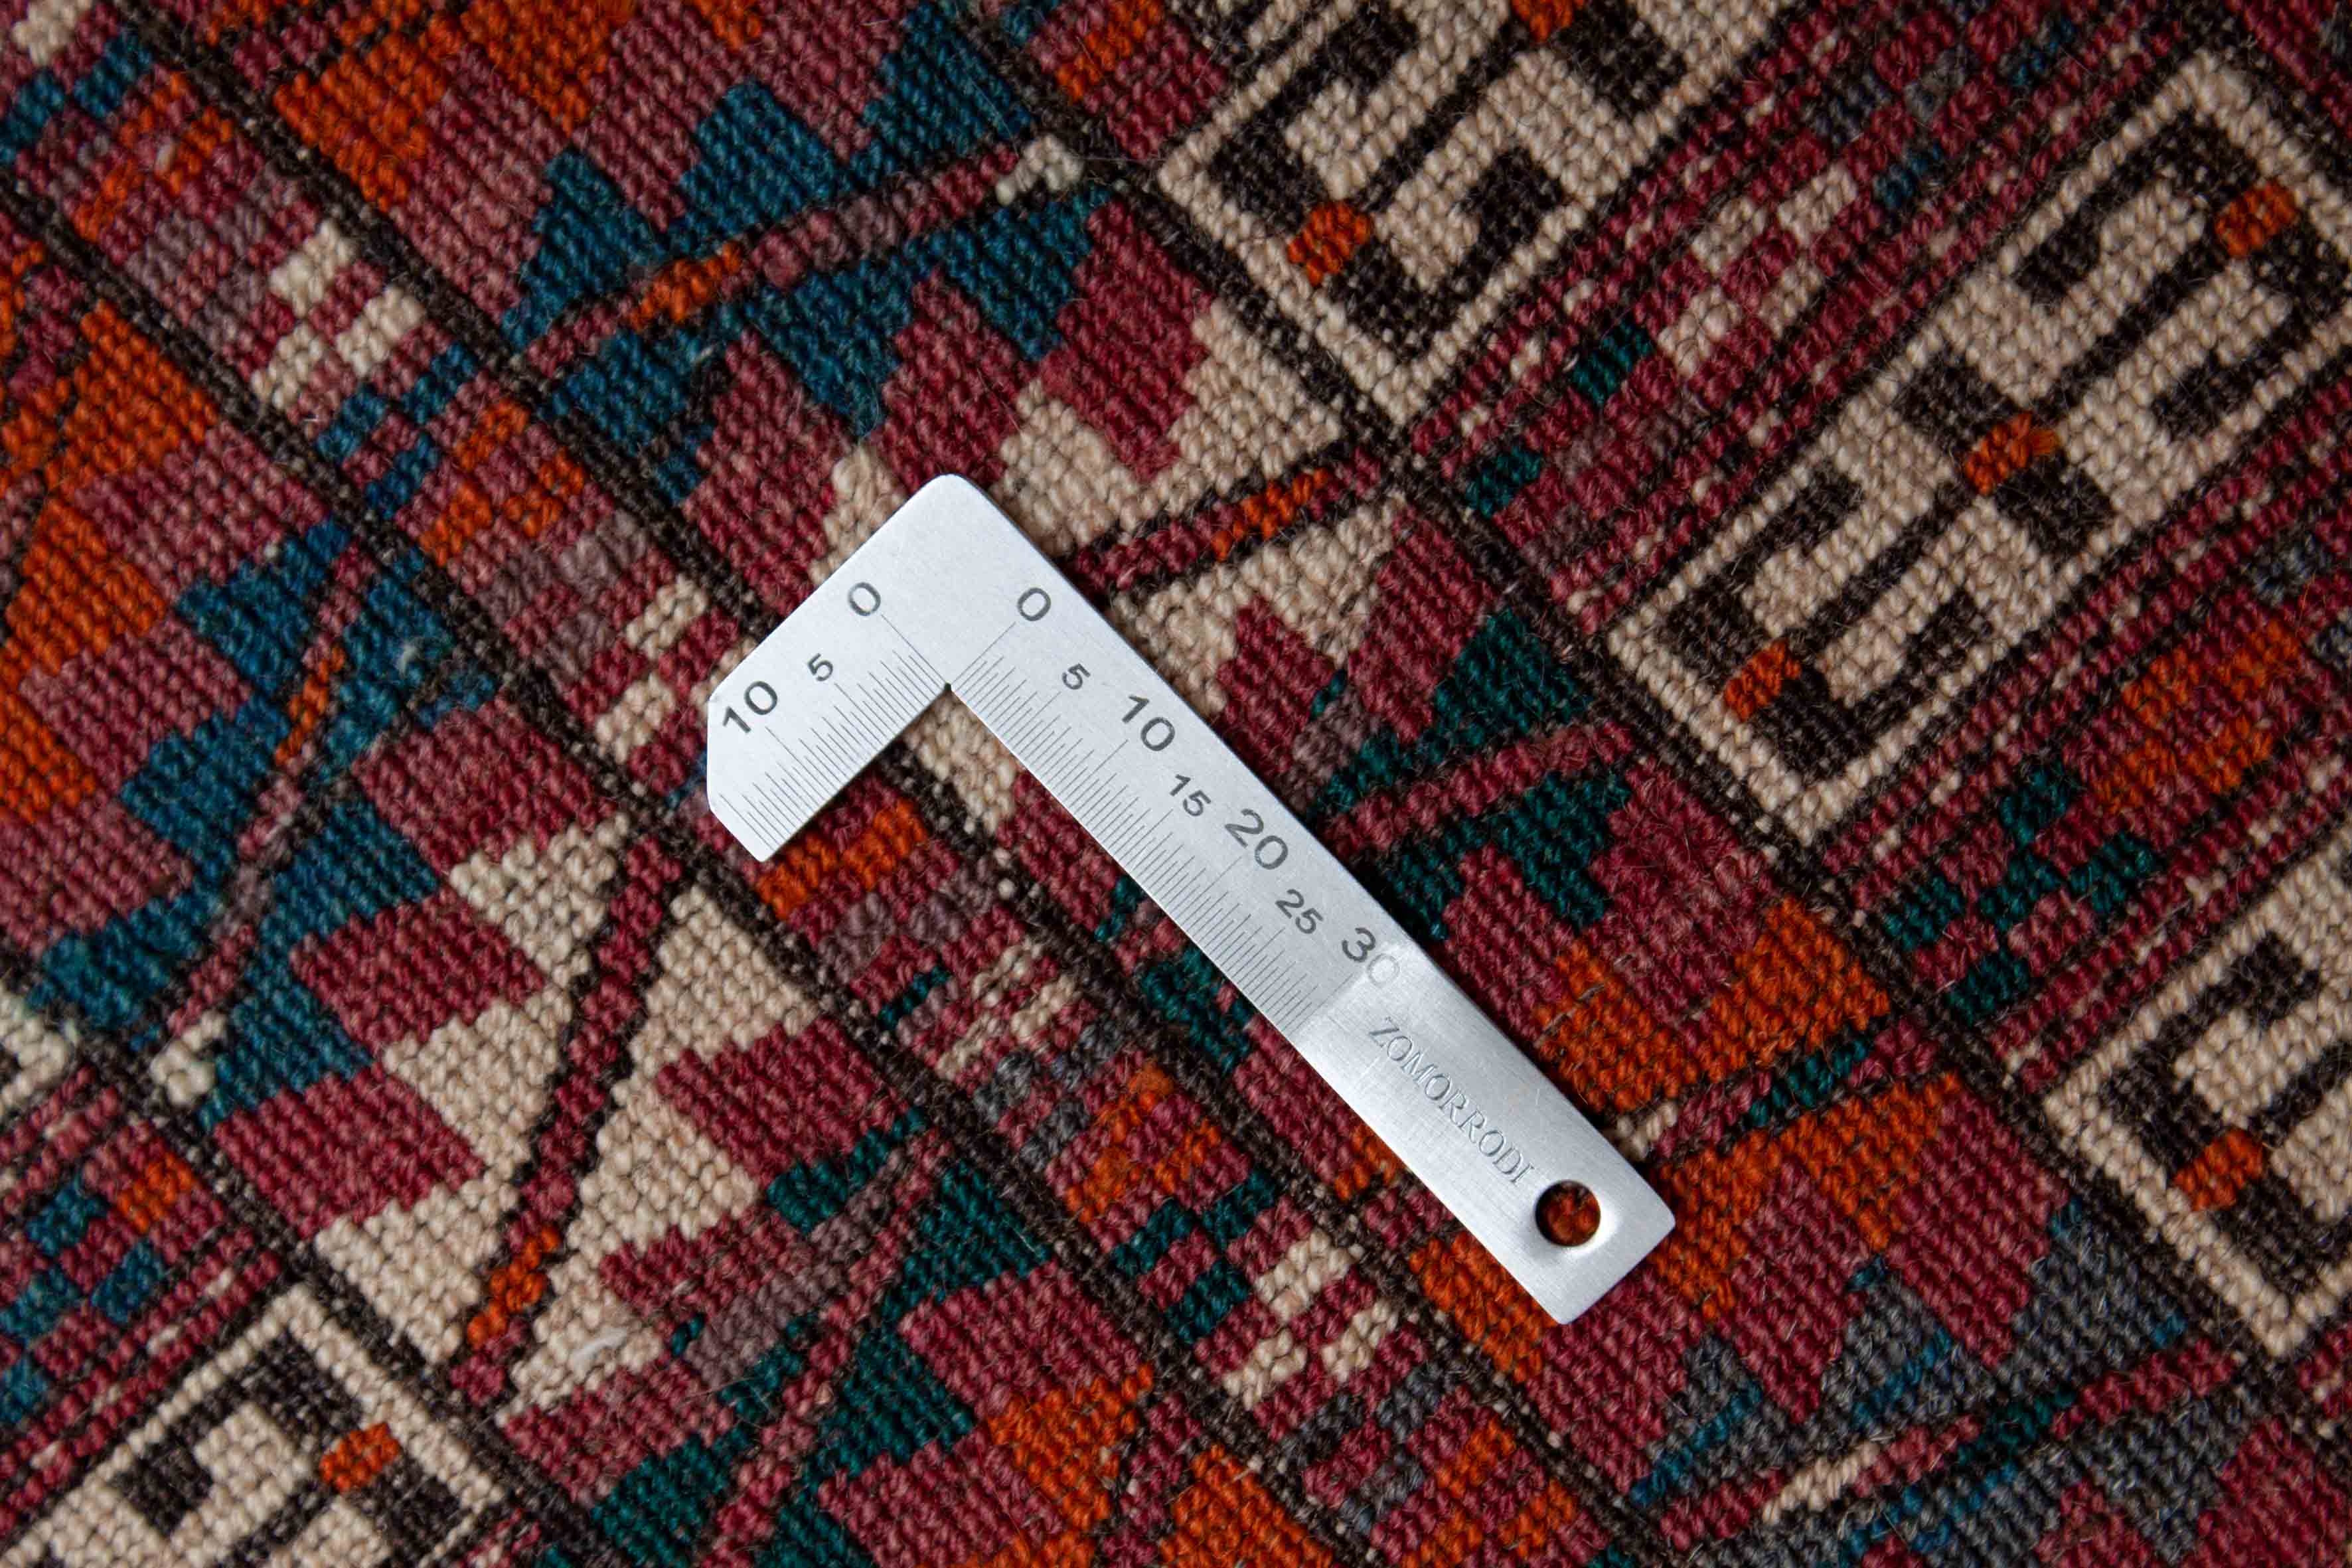 Alter Turkmenischer Teppich | 118 cm x 81 cm | Nr. 19513